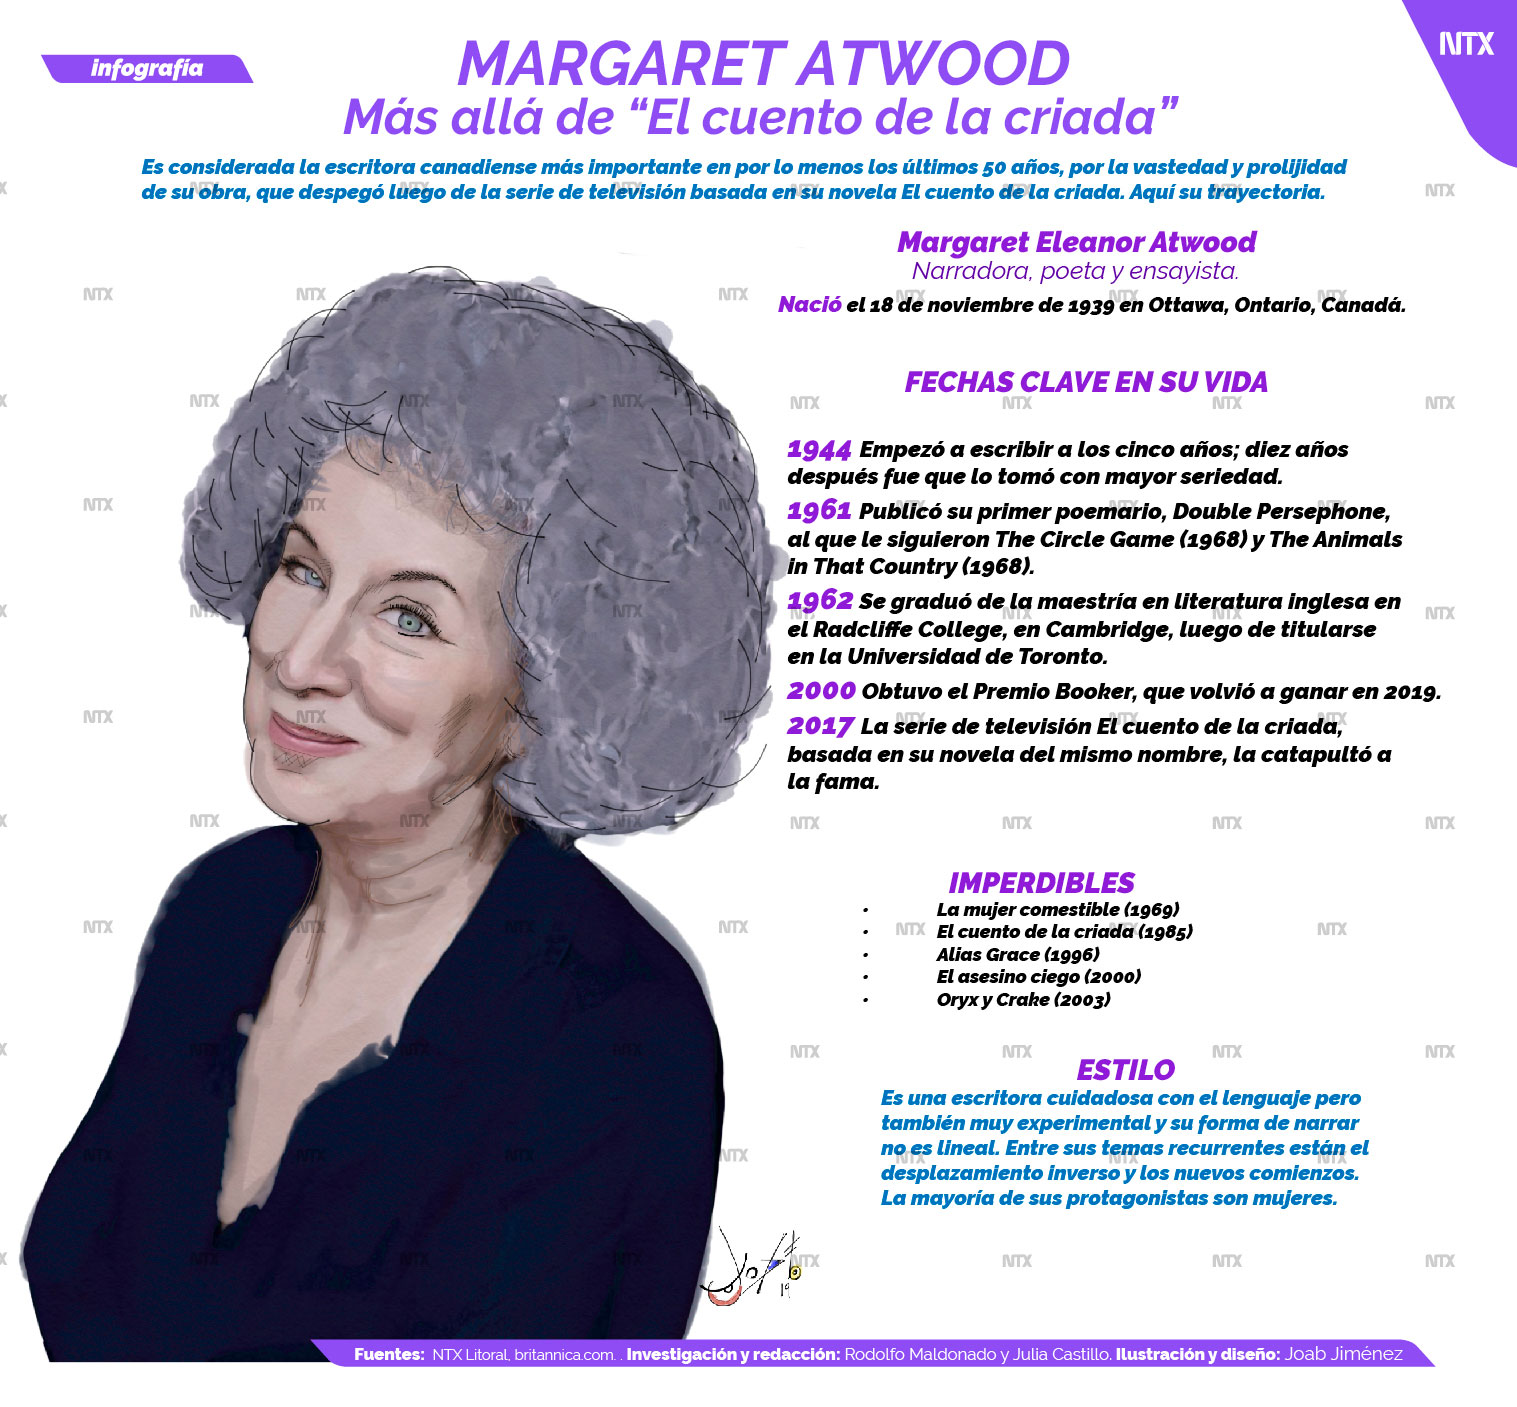 Margaret Atwood ms all de "El cuento de la criada"